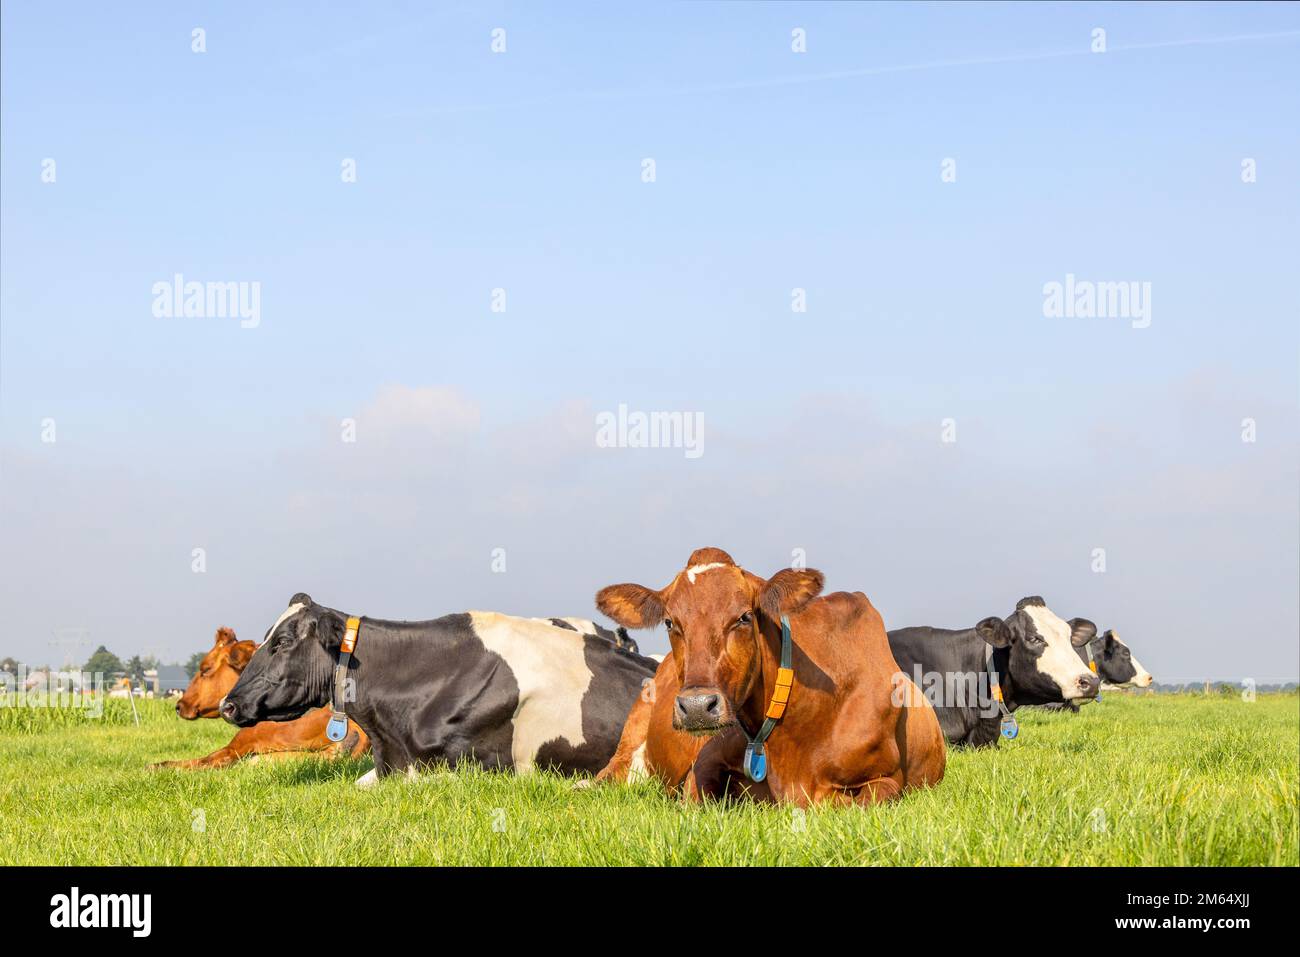 Les vaches de groupe couchées ensemble dans un champ dans la prairie, satisfaites et heureuses Banque D'Images